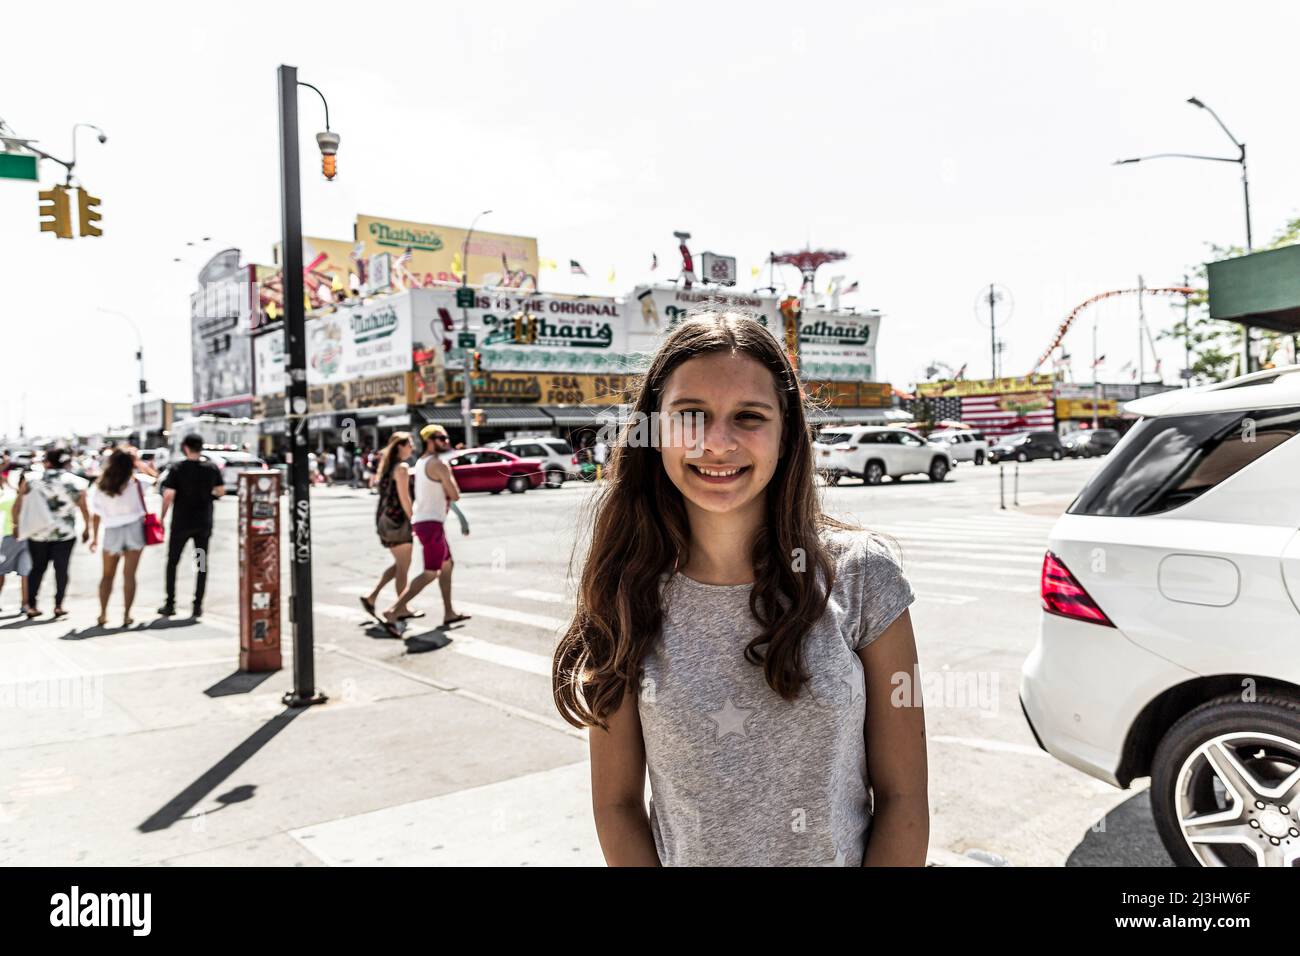 SURF Ave/STILLWELL AV, New York City, NY, USA, 14 Jahre alt, kaukasisches Teenager-Mädchen mit braunen Haaren an einer Kreuzung in Coney Island Stockfoto